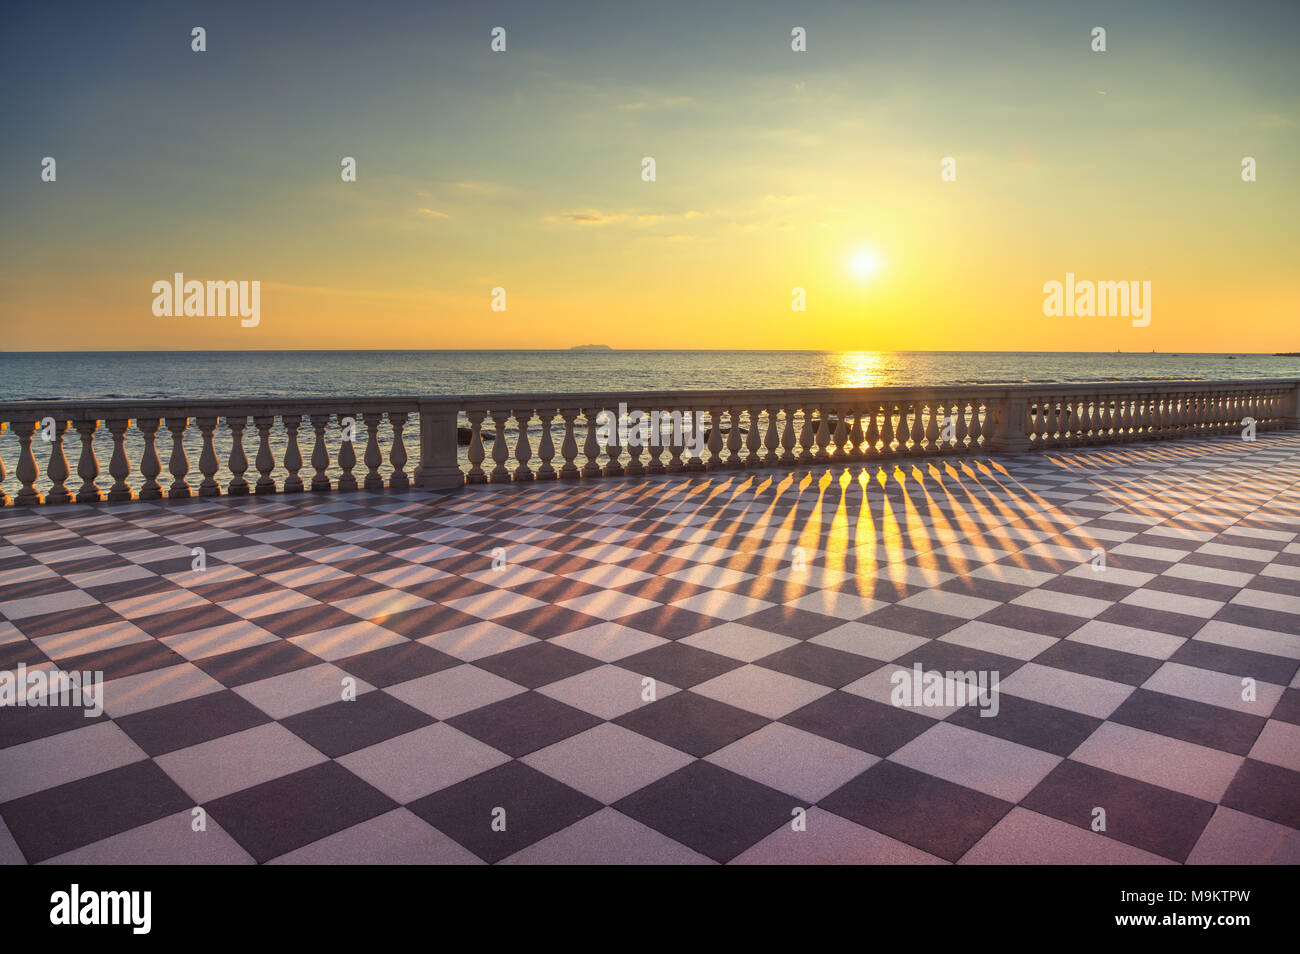 Die Terrazza Mascagni Terrasse Belvedere Meer atr Sonnenuntergang, schwarz-weiß Schachbrettmuster. Livorno Toskana Italien Europa. Stockfoto